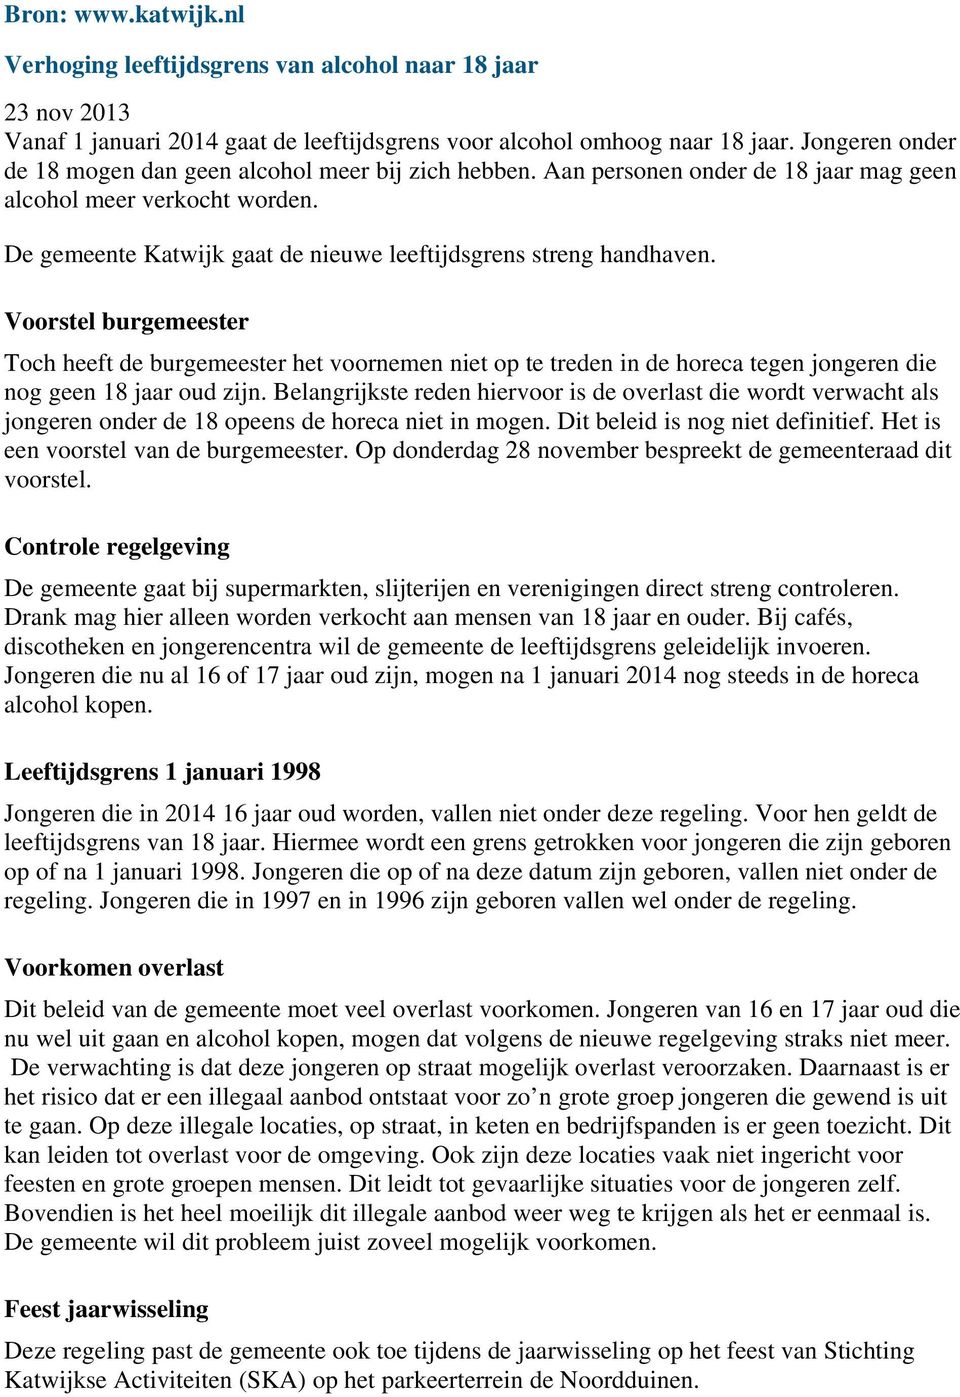 De gemeente Katwijk gaat de nieuwe leeftijdsgrens streng handhaven.